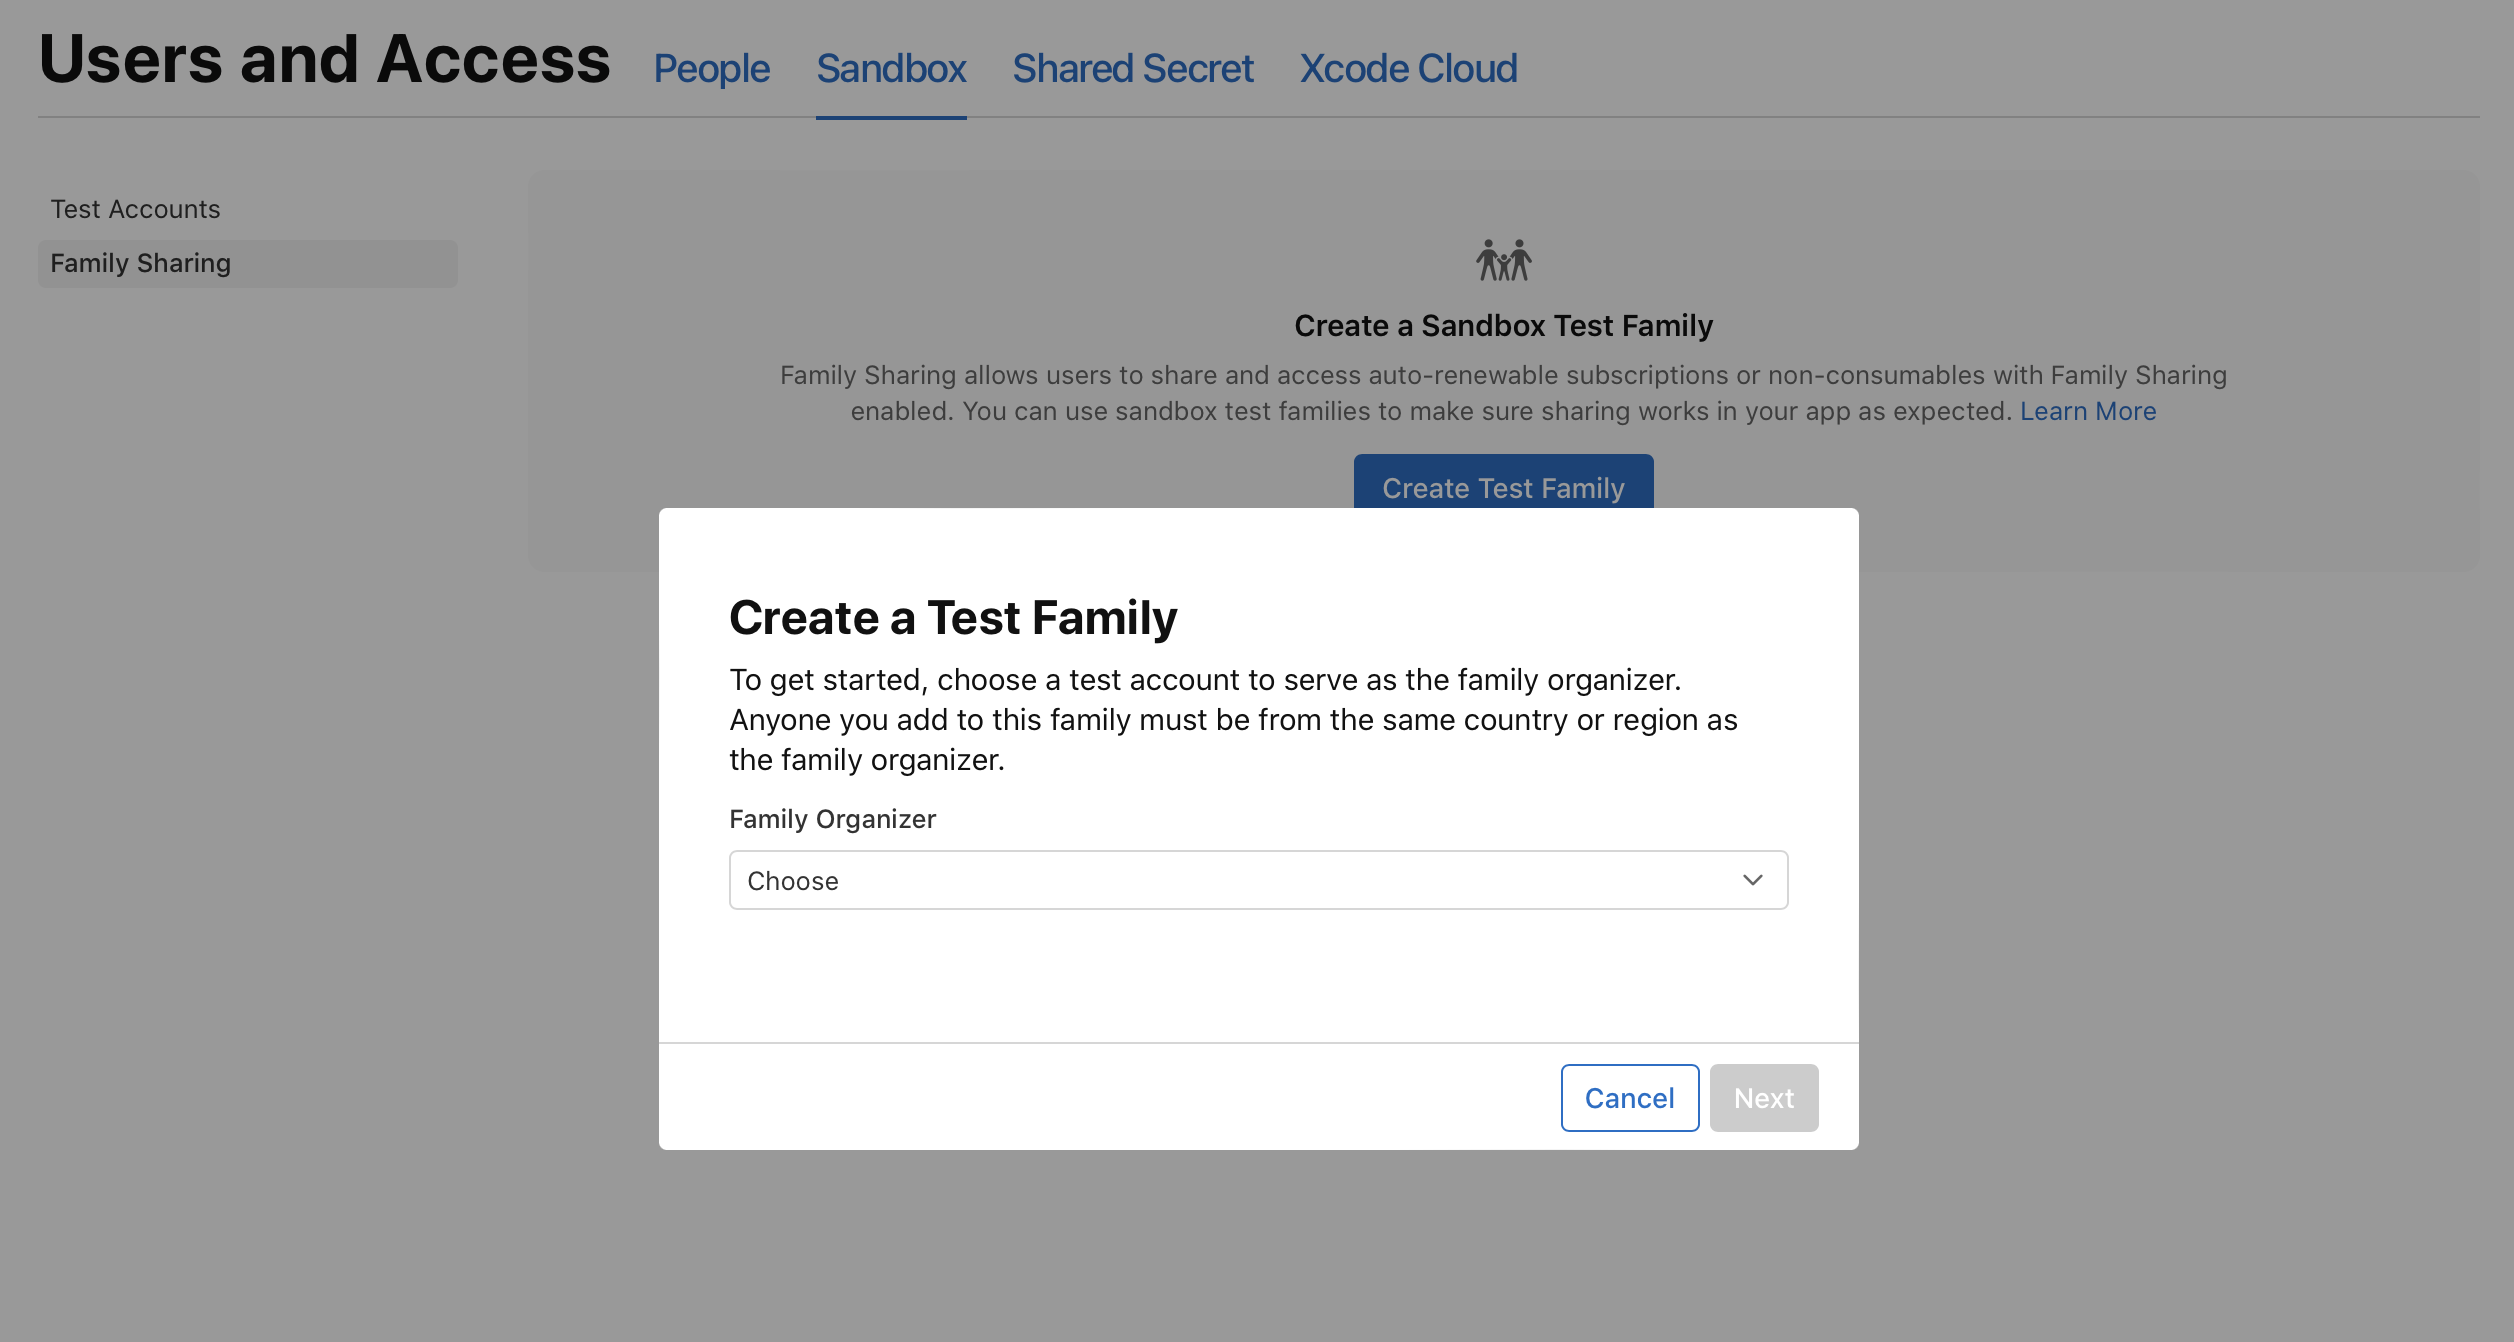 截屏为“家人共享”页面，显示“创建测试家庭”对话框，其中包含“家庭组织者”菜单。